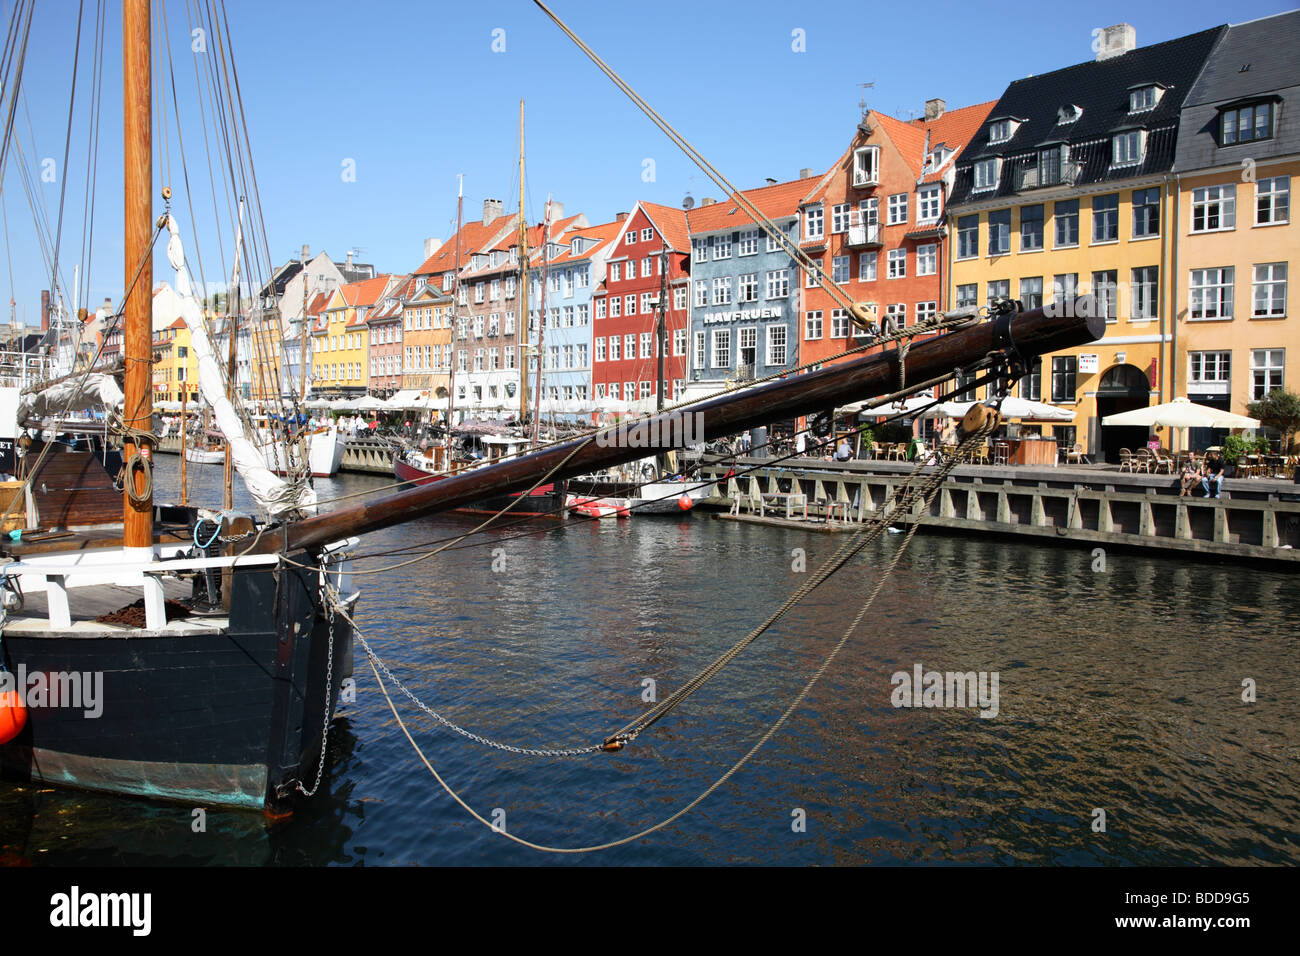 Der Kanal in Nyhavn Kopenhagen - Hafen die alten Viertel berühmt für die alten bemalten Häusern, Restaurants, Bars und Kreuzfahrten. Stockfoto